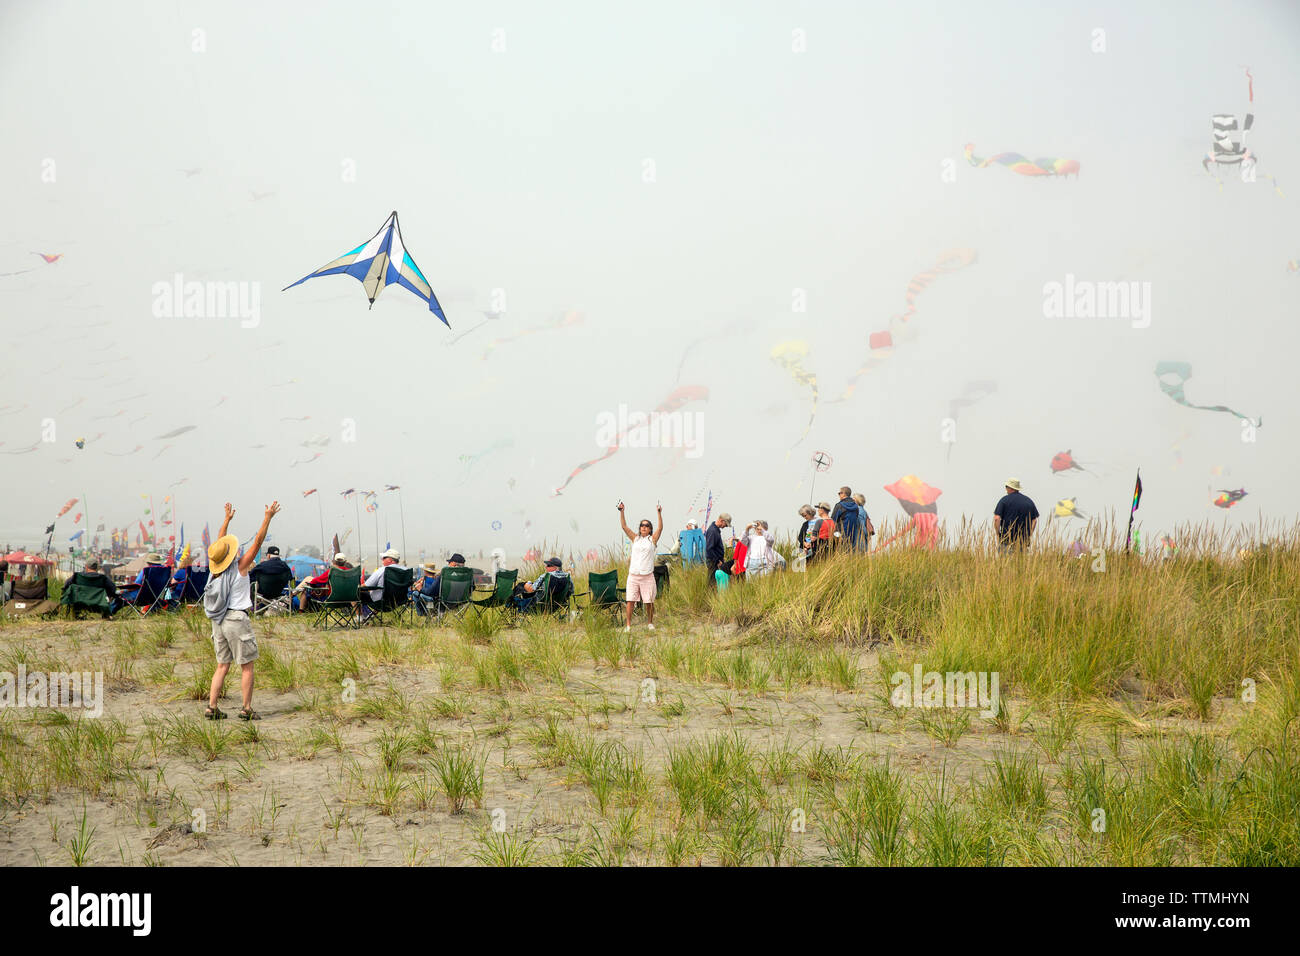 USA, Washington State, Long Beach Halbinsel, internationale Drachenfest, die Einführung eines Drachen auf dem grasbewachsenen Dünen am Kite Festival Stockfoto